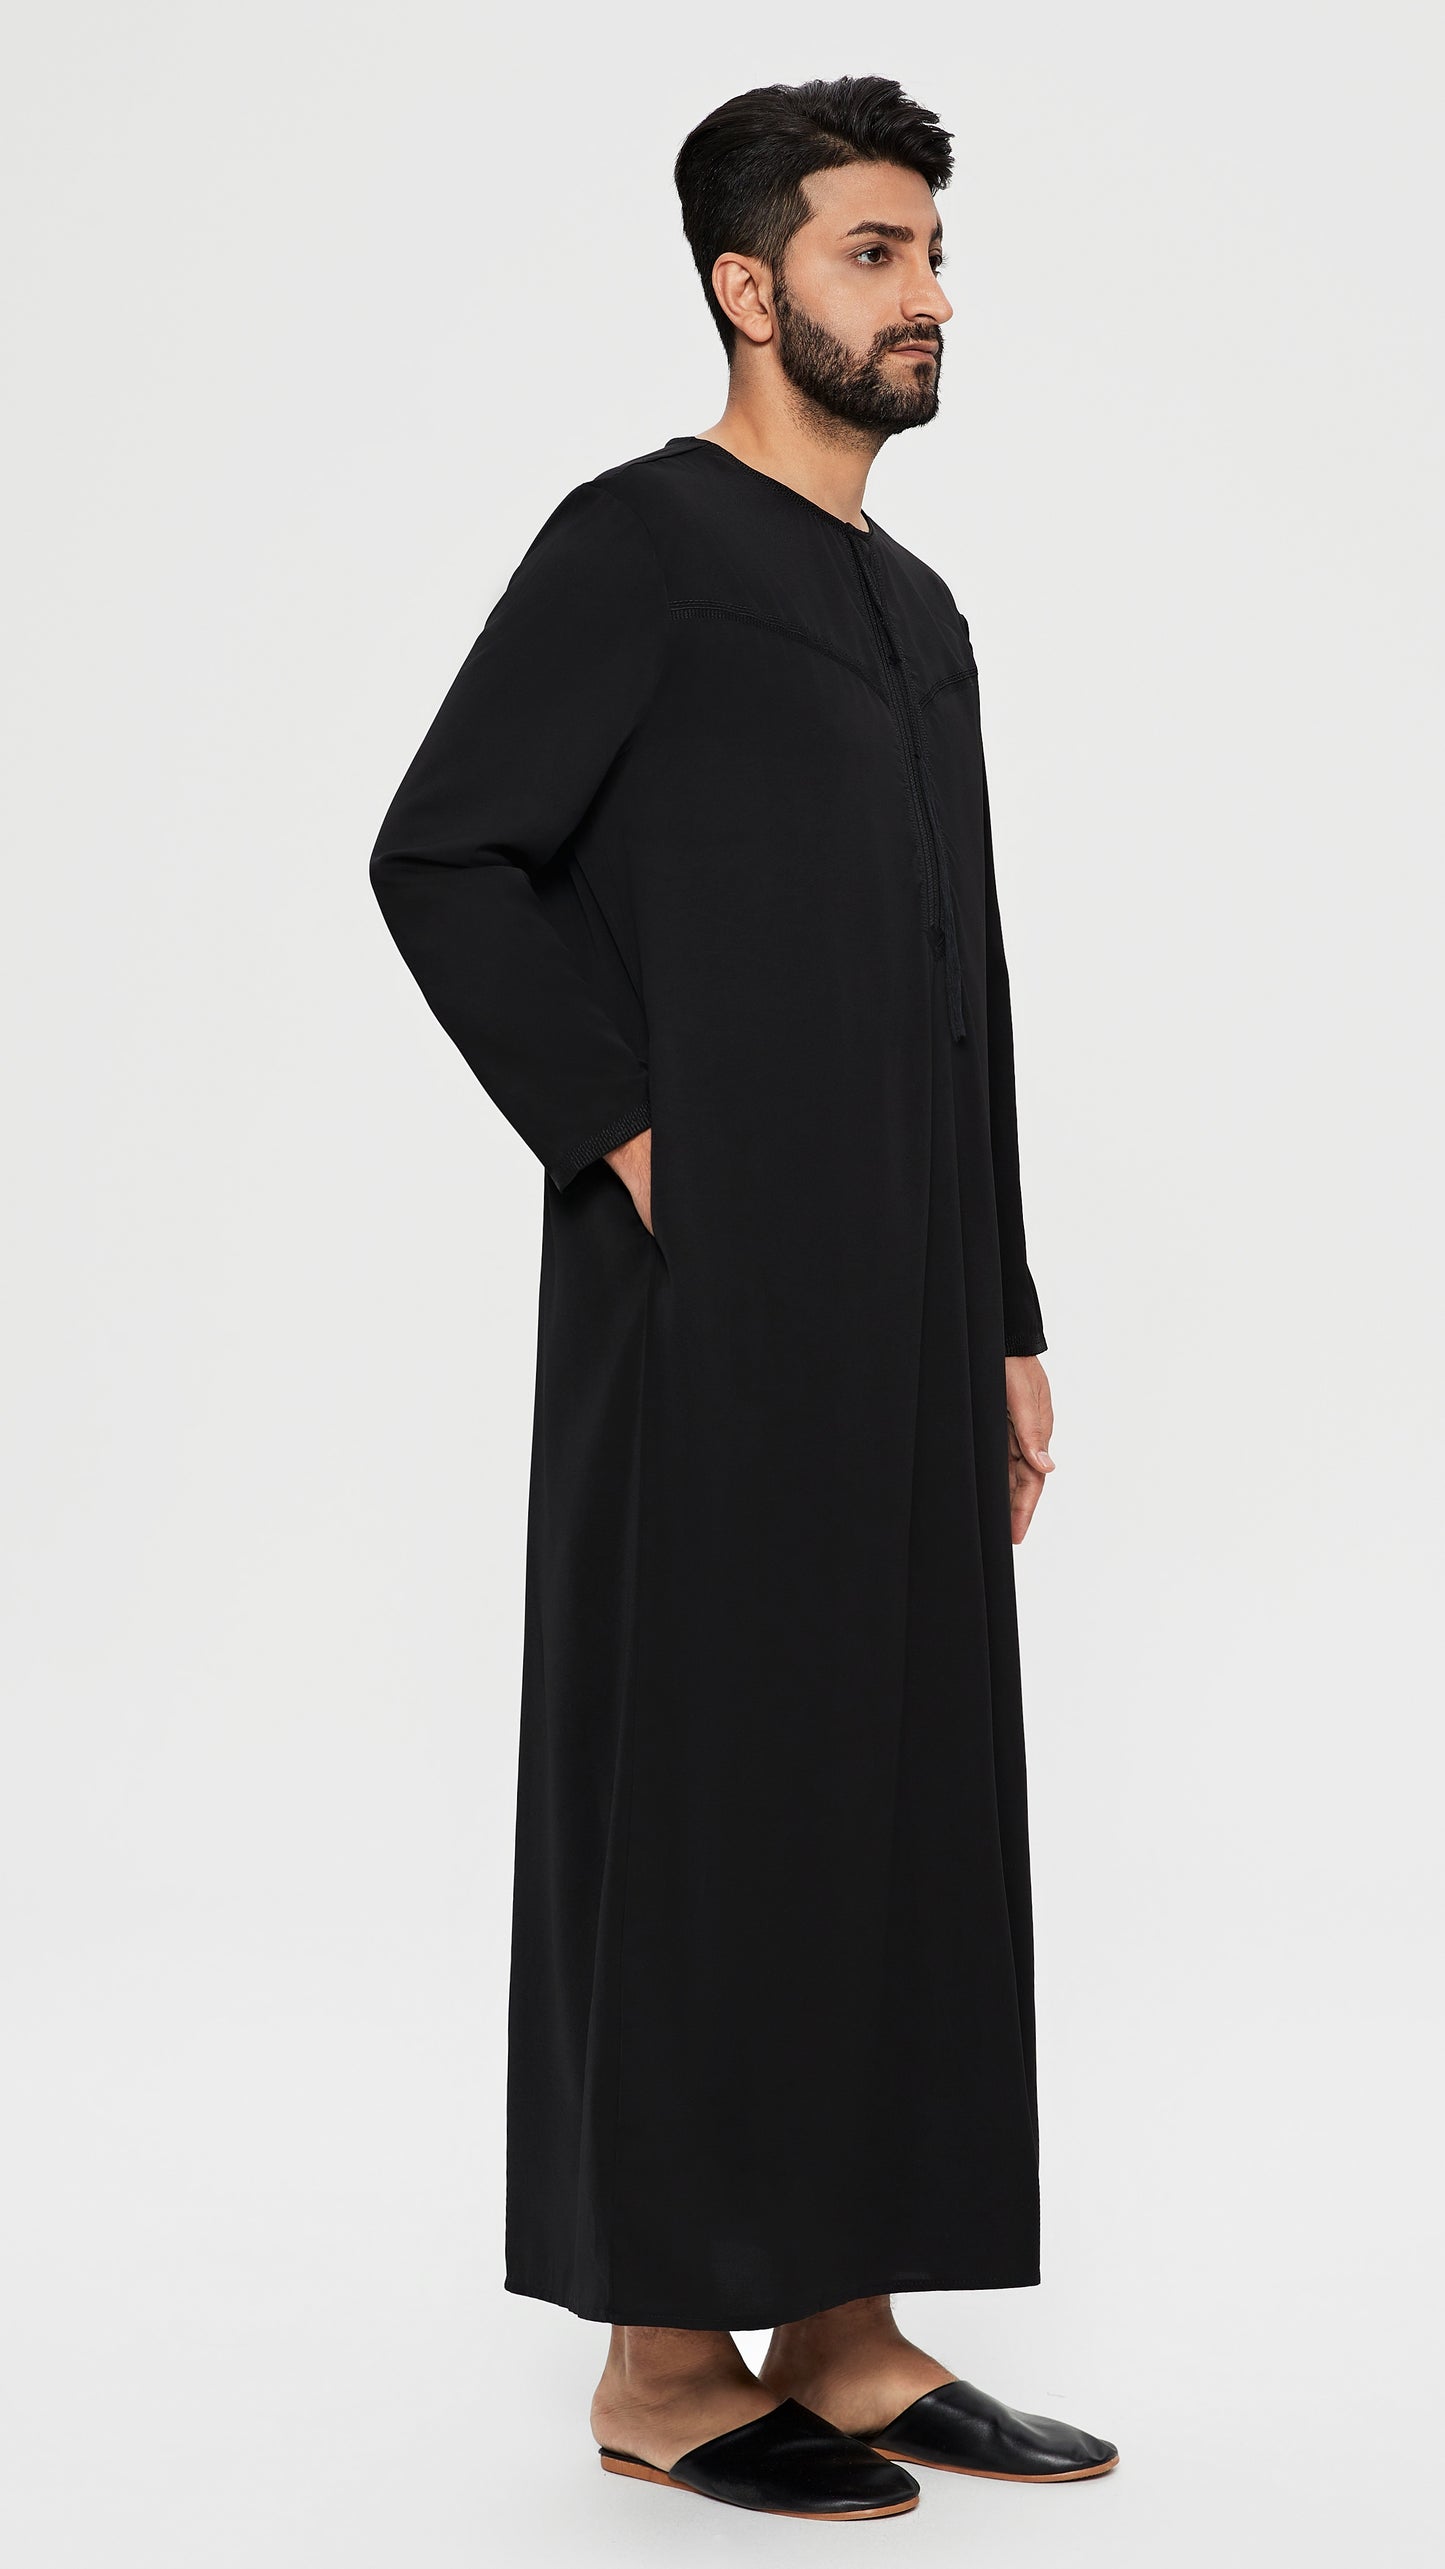 Qamis - Emiratí Negro con bordado en el pecho